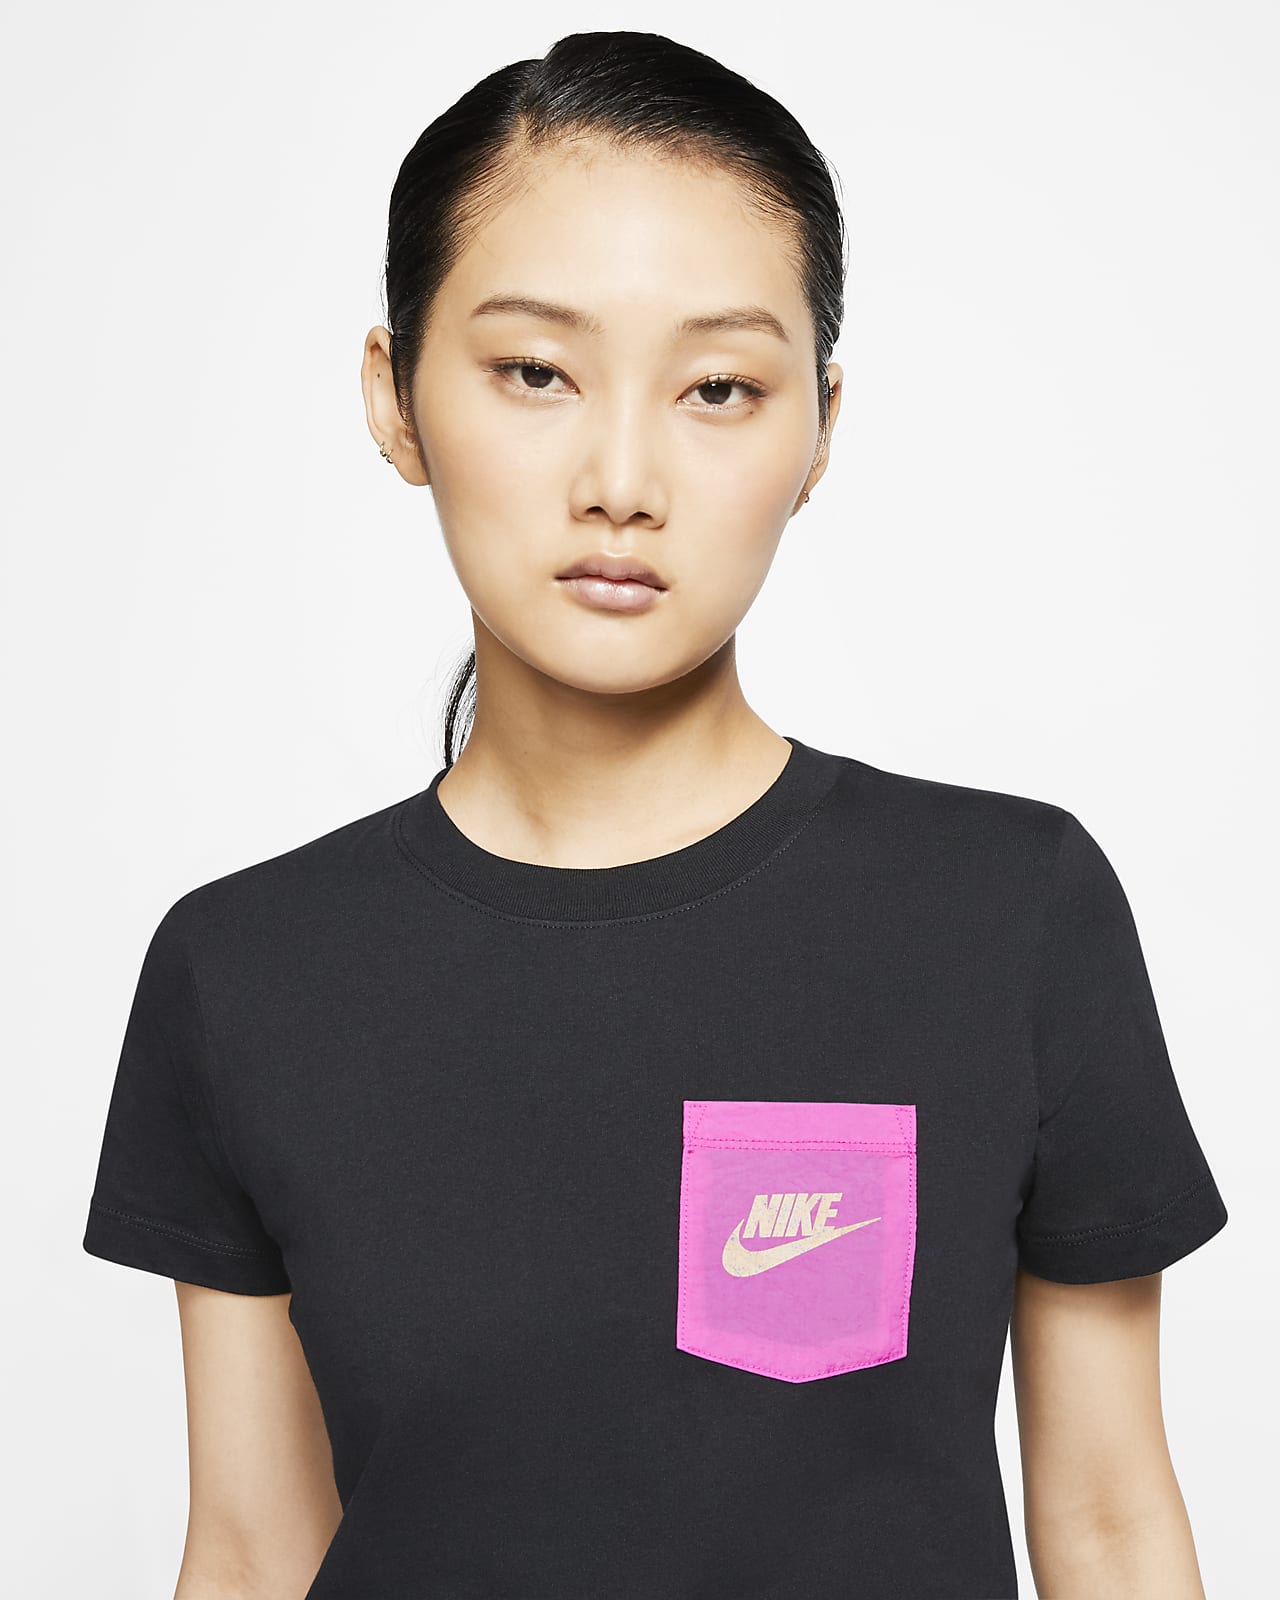 Nike公式 ナイキ スポーツウェア アイコン クラッシュ ウィメンズ Tシャツ オンラインストア 通販サイト